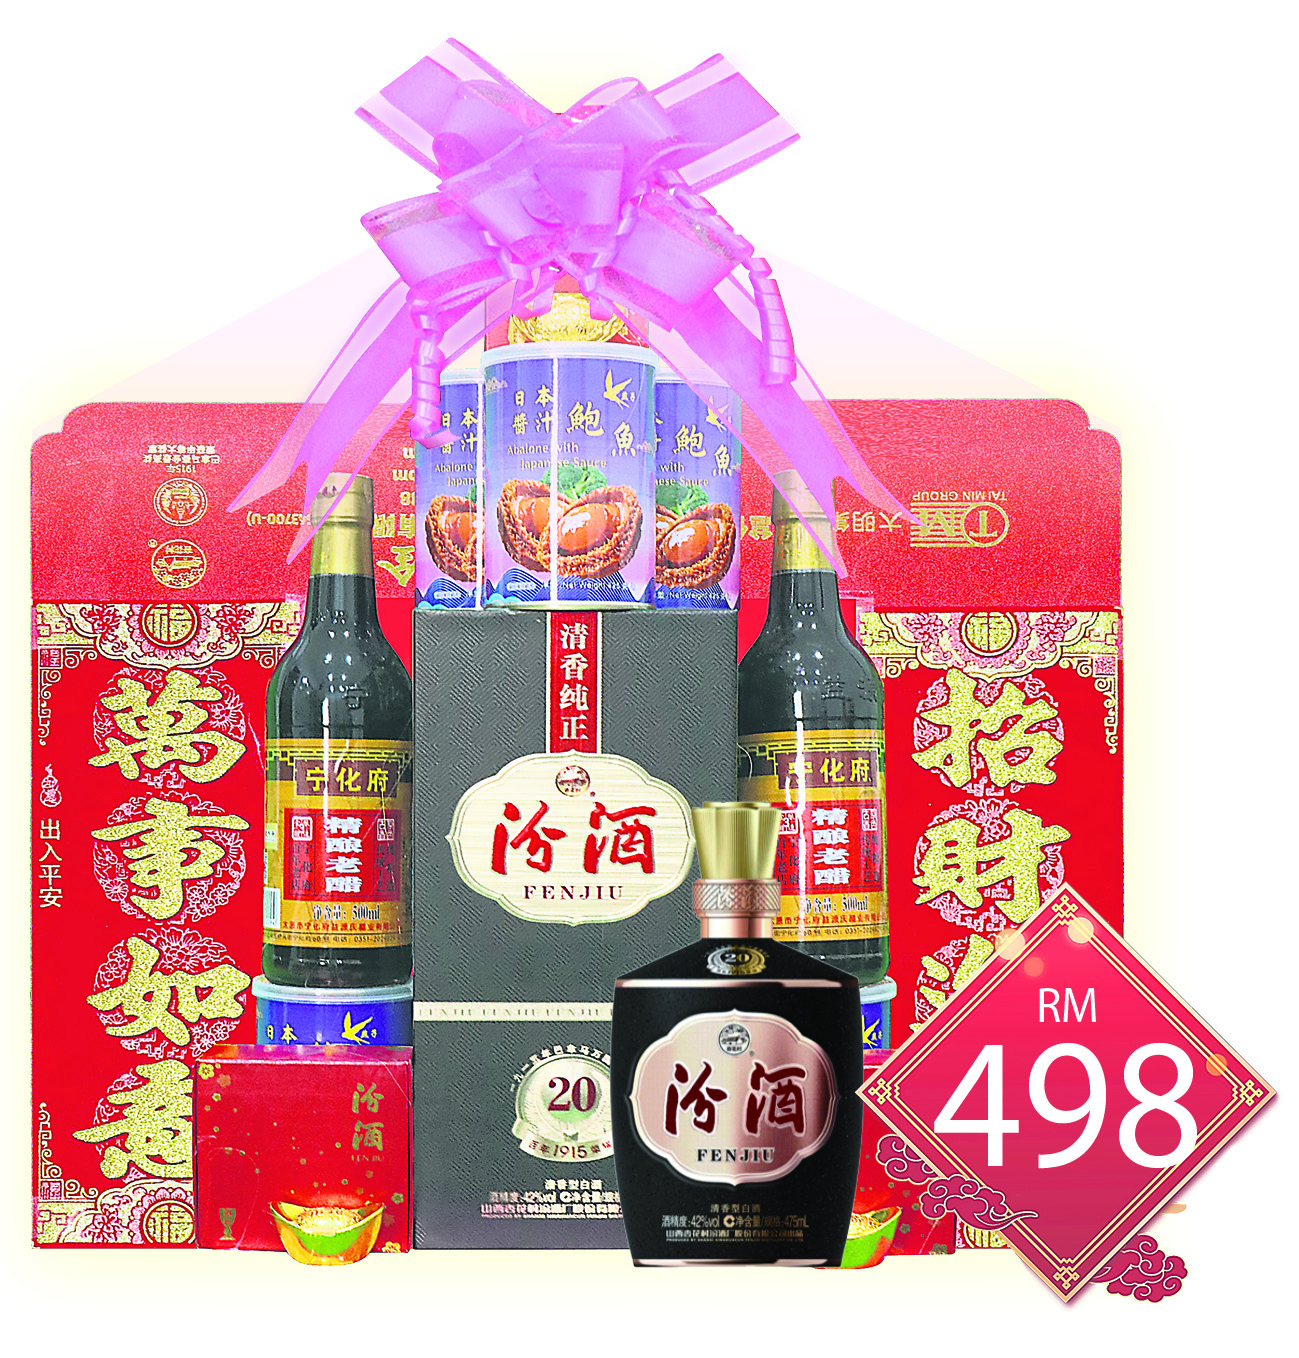 汾酒龍年尊客禮籃售價RM498。